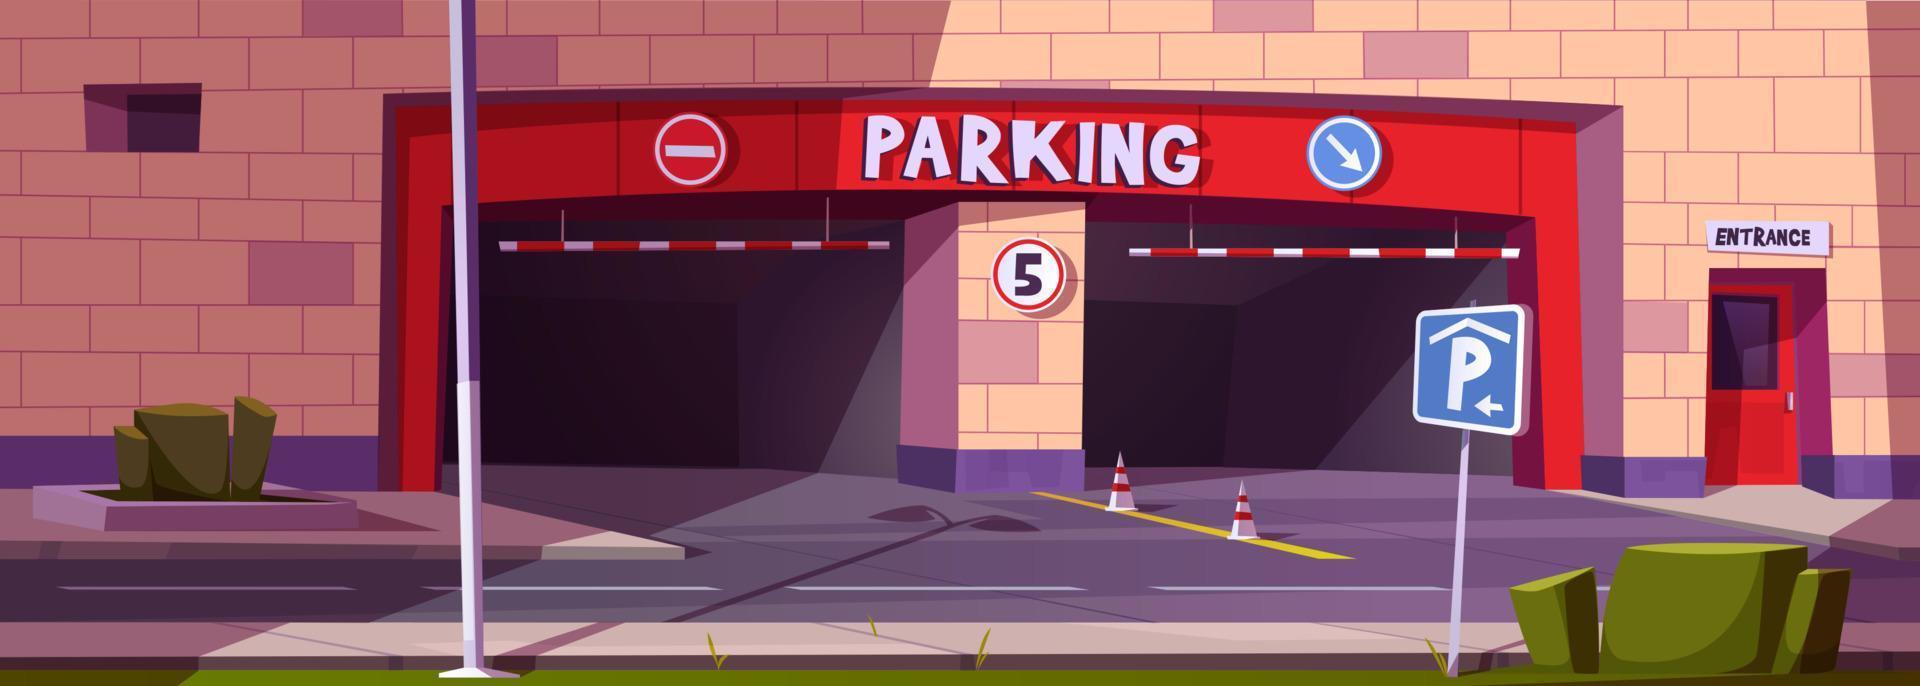 entrada de estacionamiento de barrera, fachada subterránea del centro comercial vector